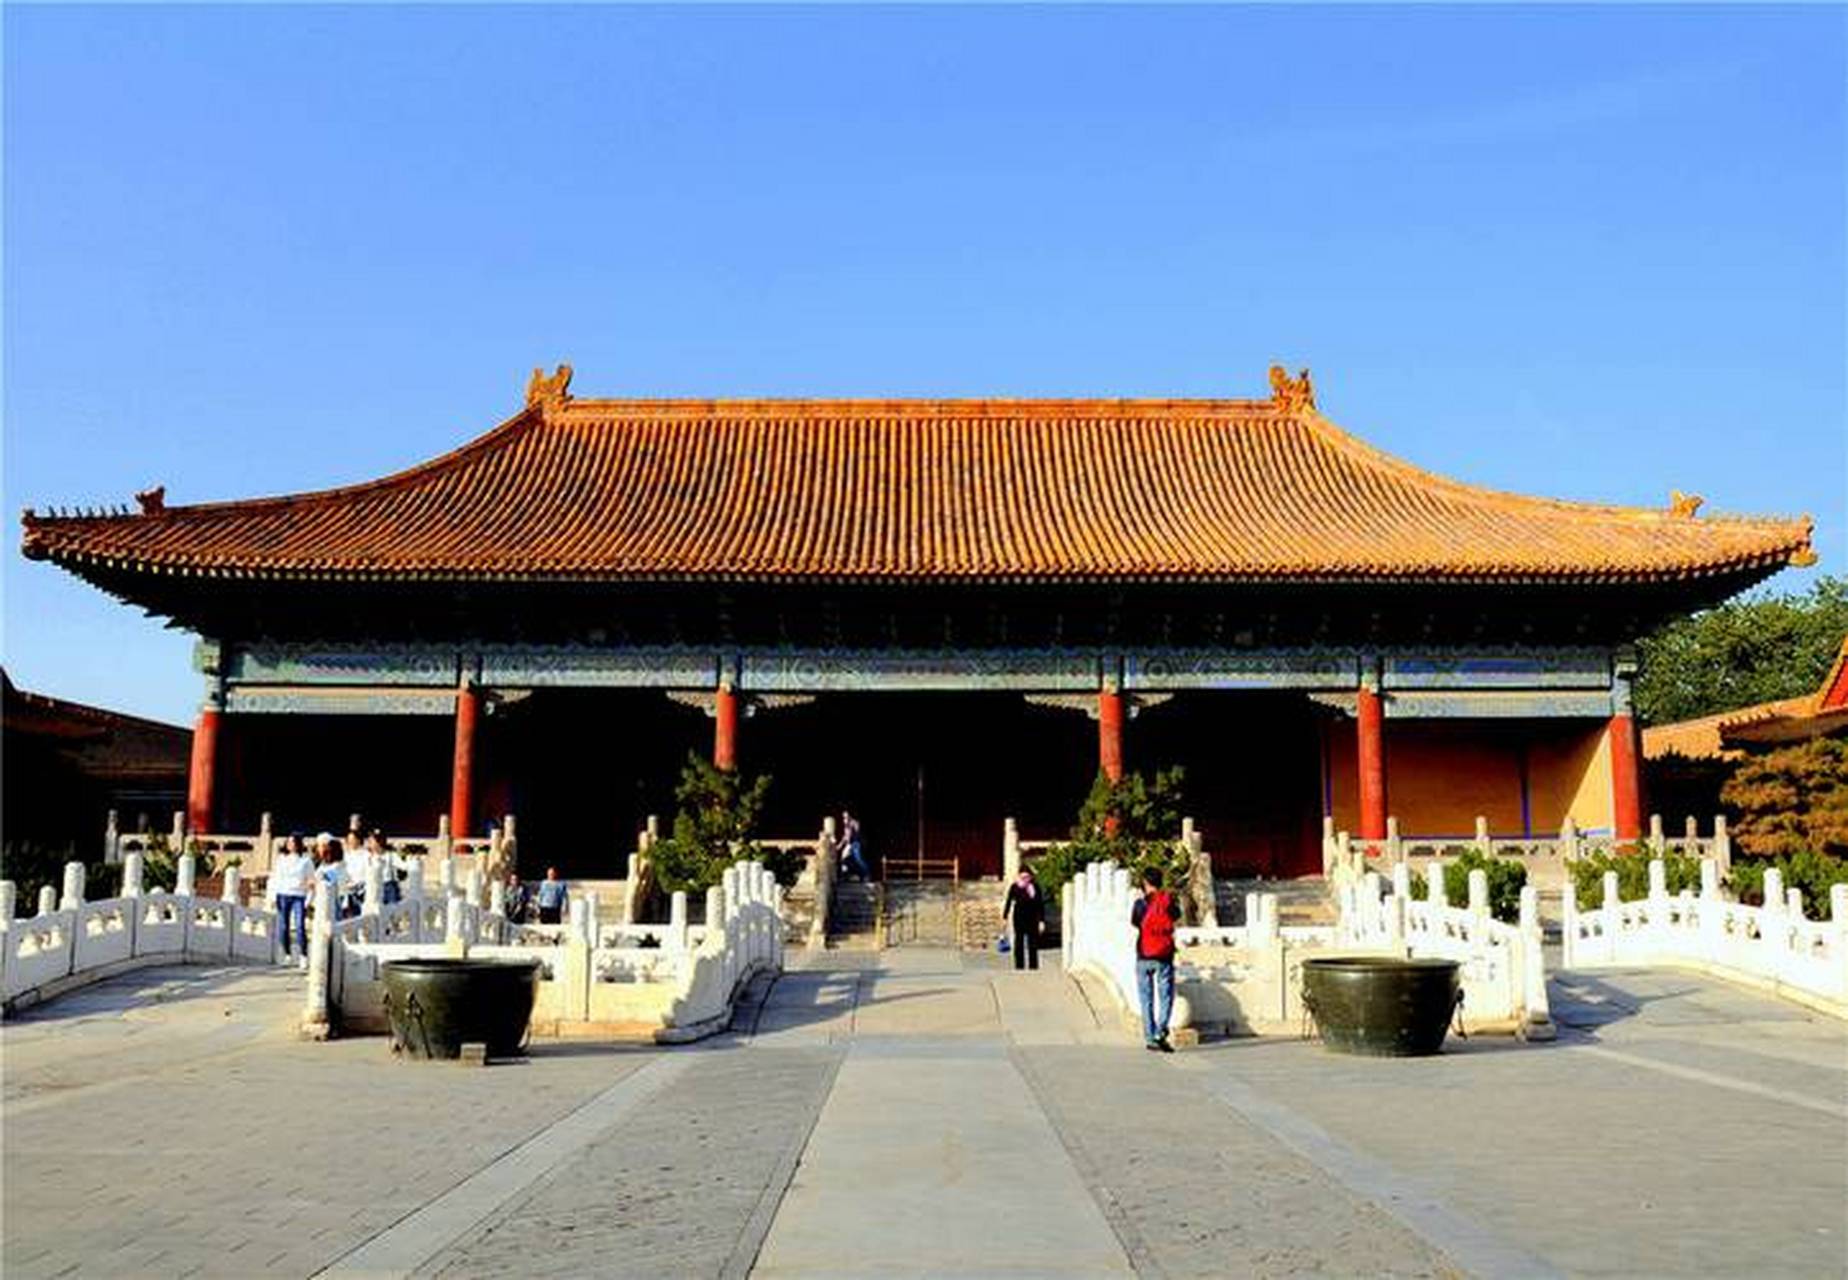 含元殿是大明宫的主体建筑,武则天长安元年(701年)改称大明殿,唐中宗